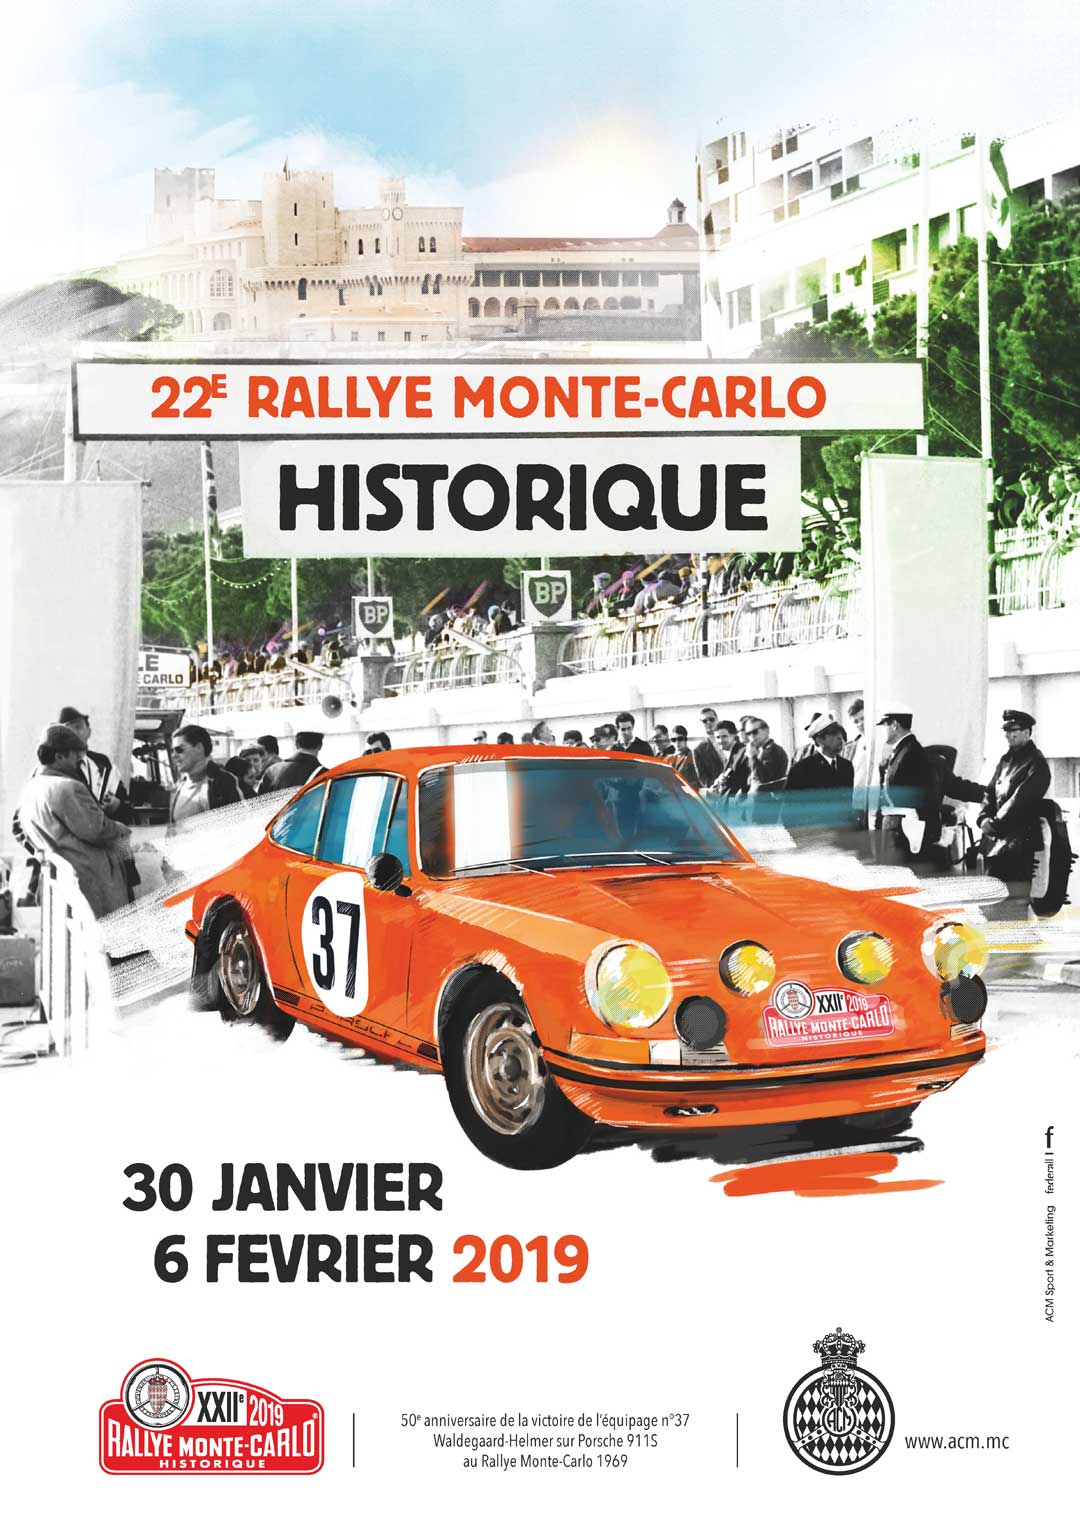 Le Rallye Monte-Carlo Historique passera par Tournon-sur-Rhone  , sur le quai Farconnet, le dimanche  03 février 2019 après-midi . Ce sera le dixième passage dans notre ville.